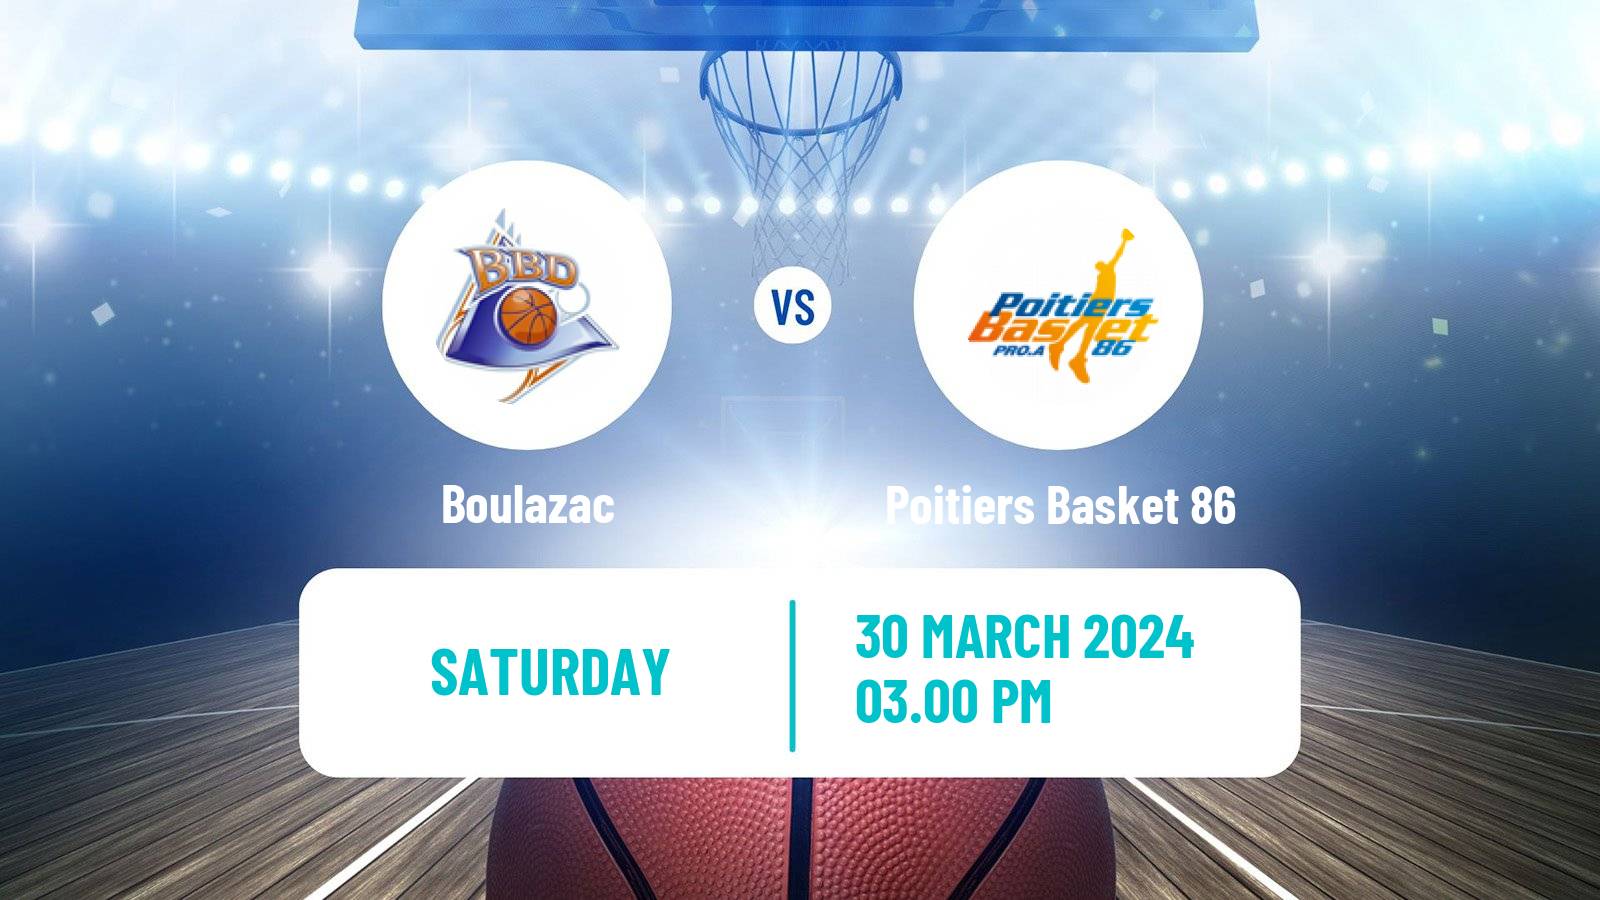 Basketball French LNB Pro B Boulazac - Poitiers Basket 86